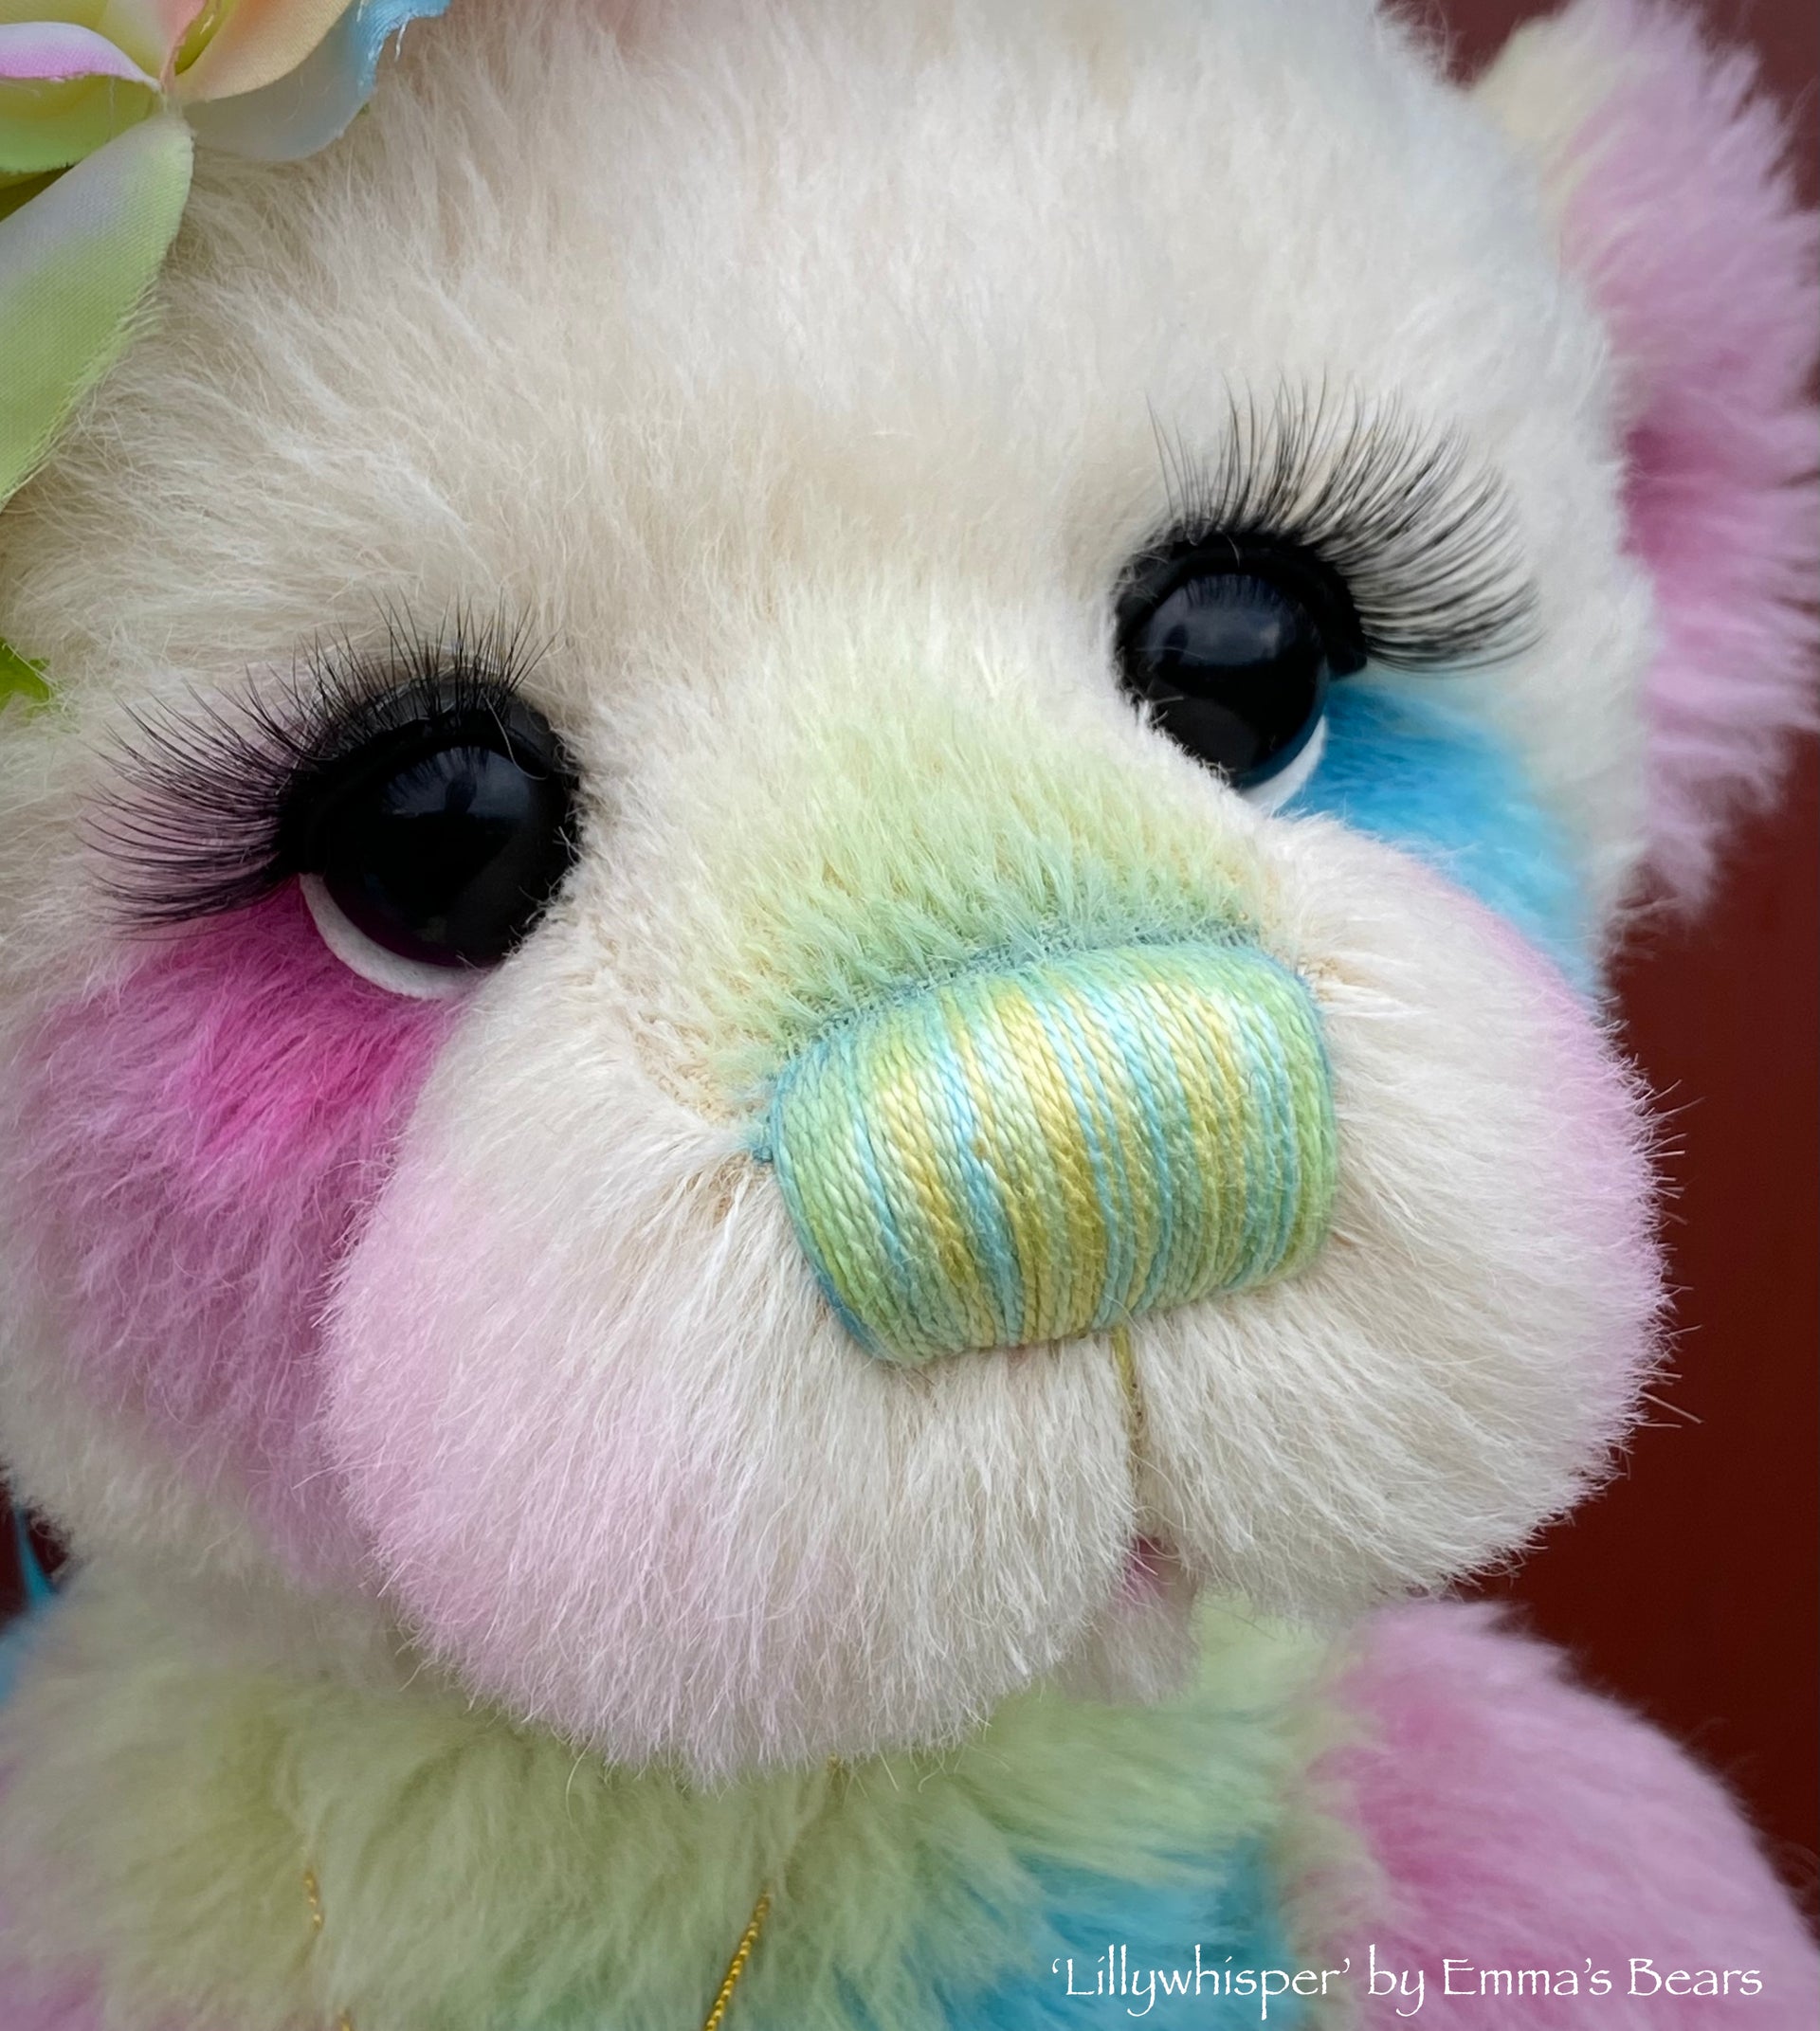 Lillywhisper - 21" Hand-dyed Alpaca Artist Bear by Emma's Bears - OOAK